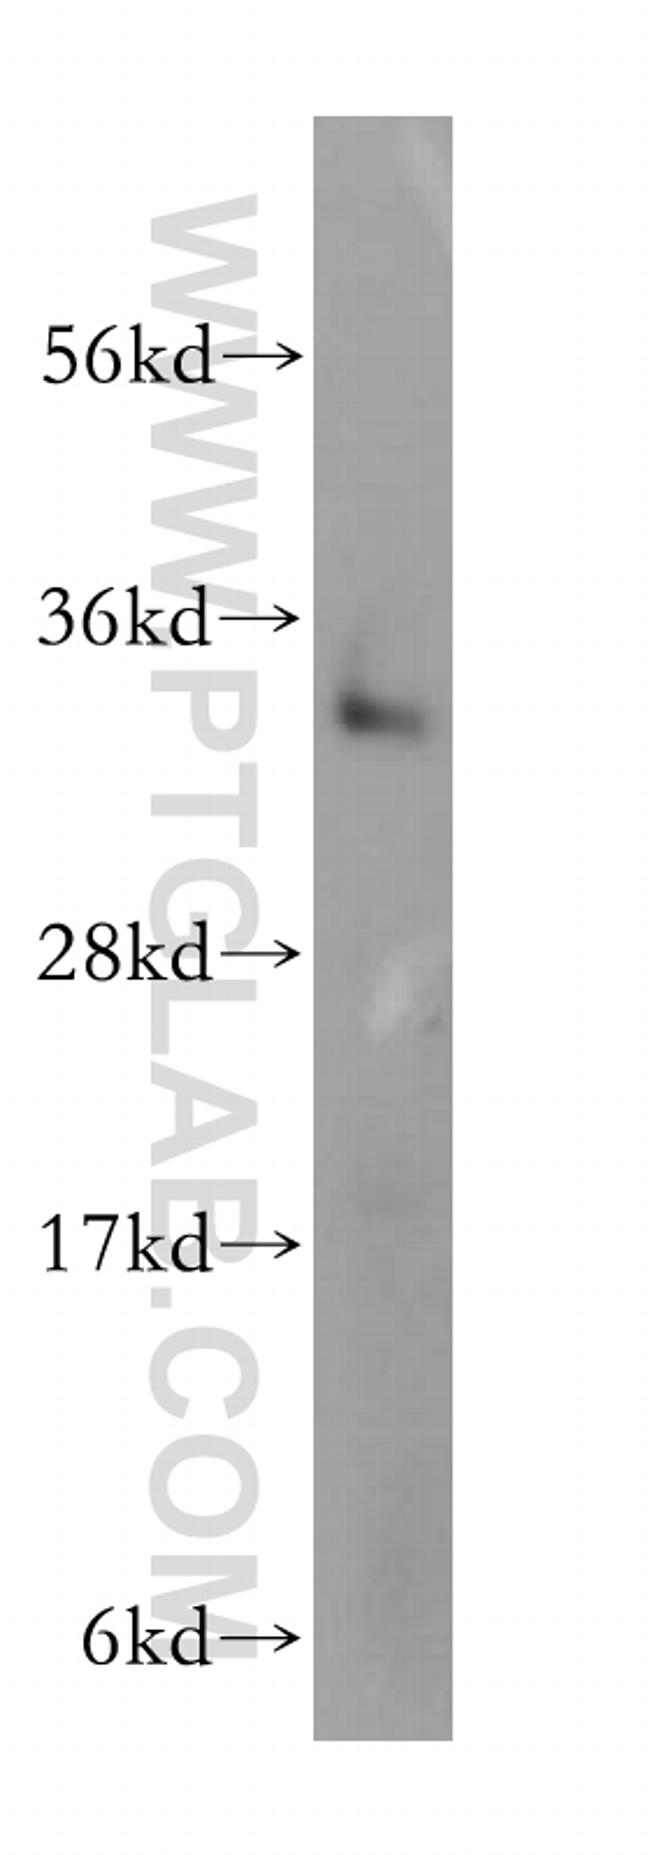 TRADD Antibody in Western Blot (WB)